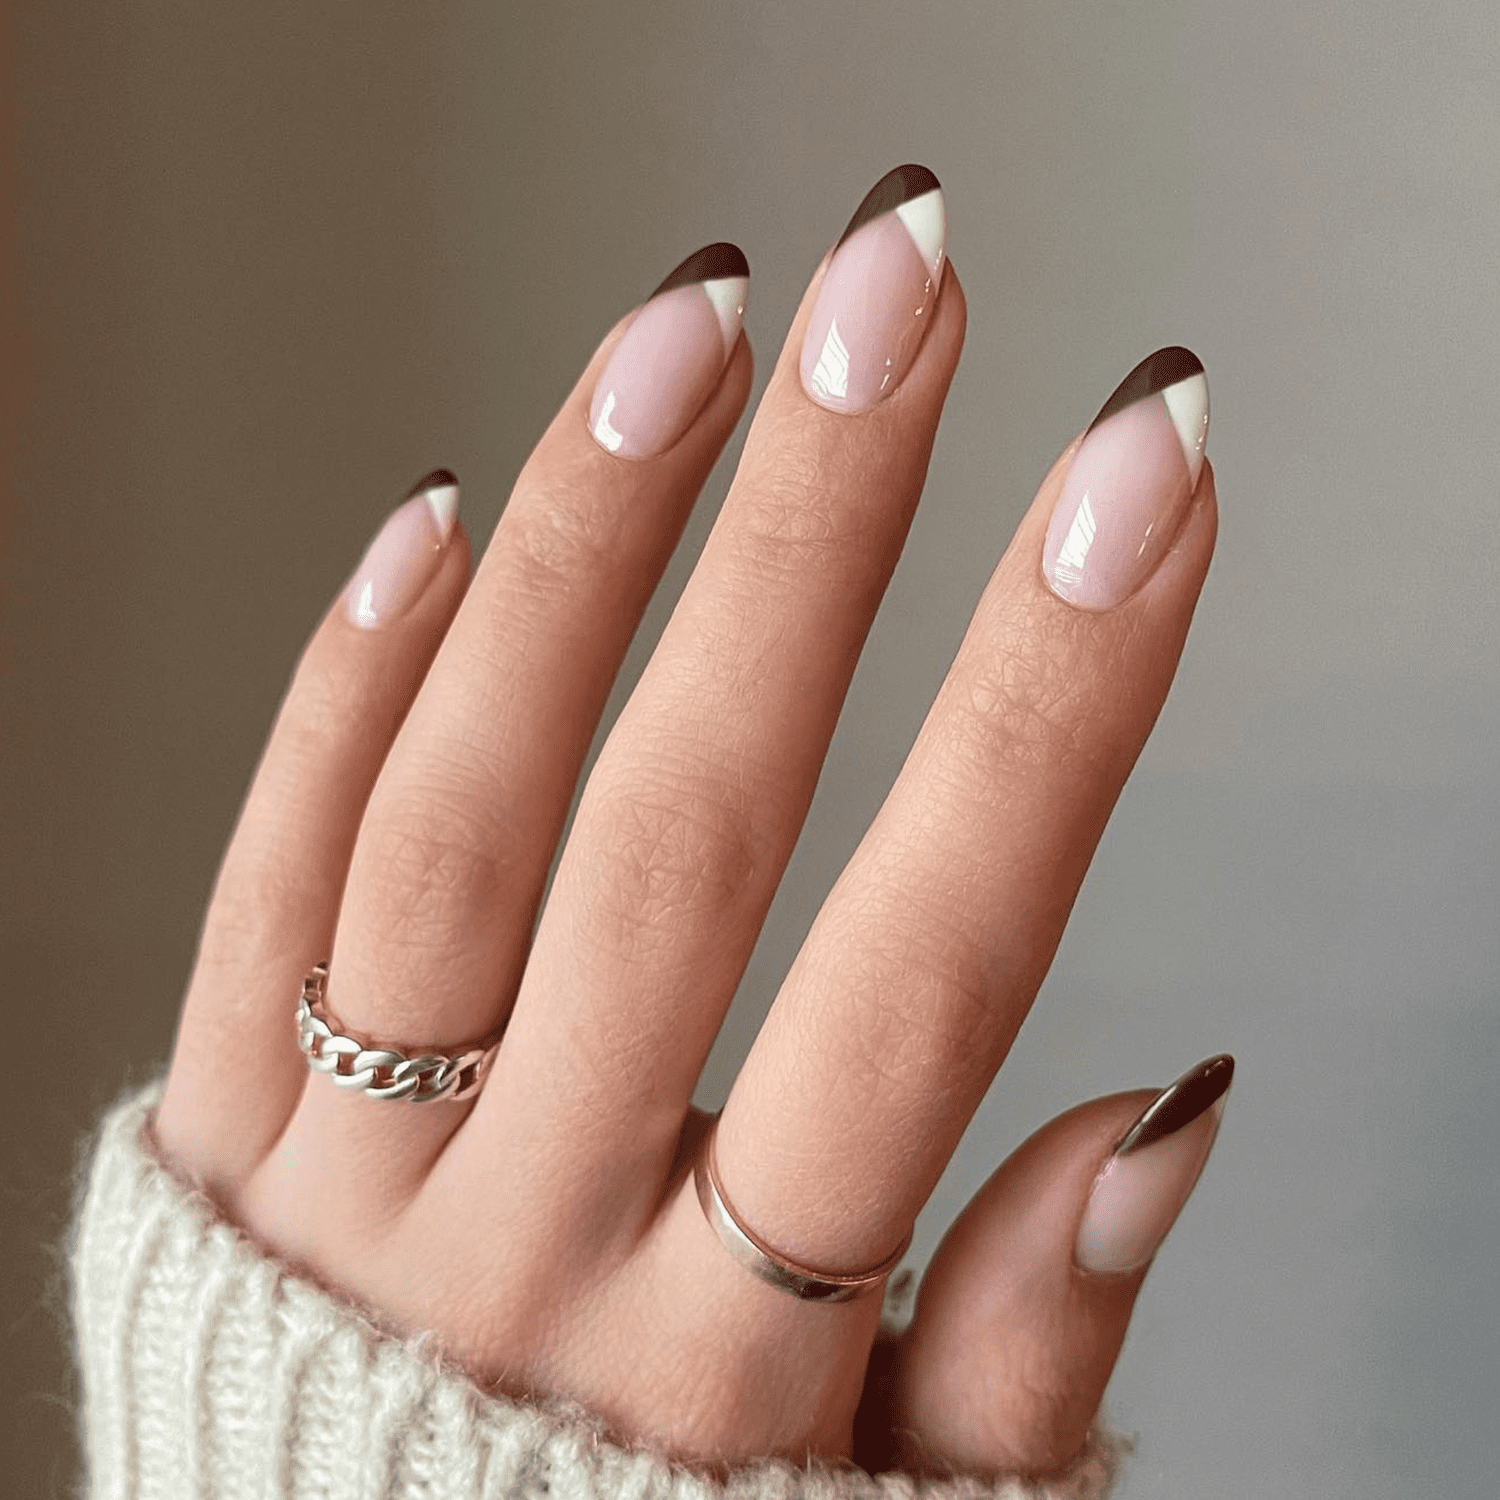 Unhas redondas de comprimento médio com manicure francesa marrom e branca.